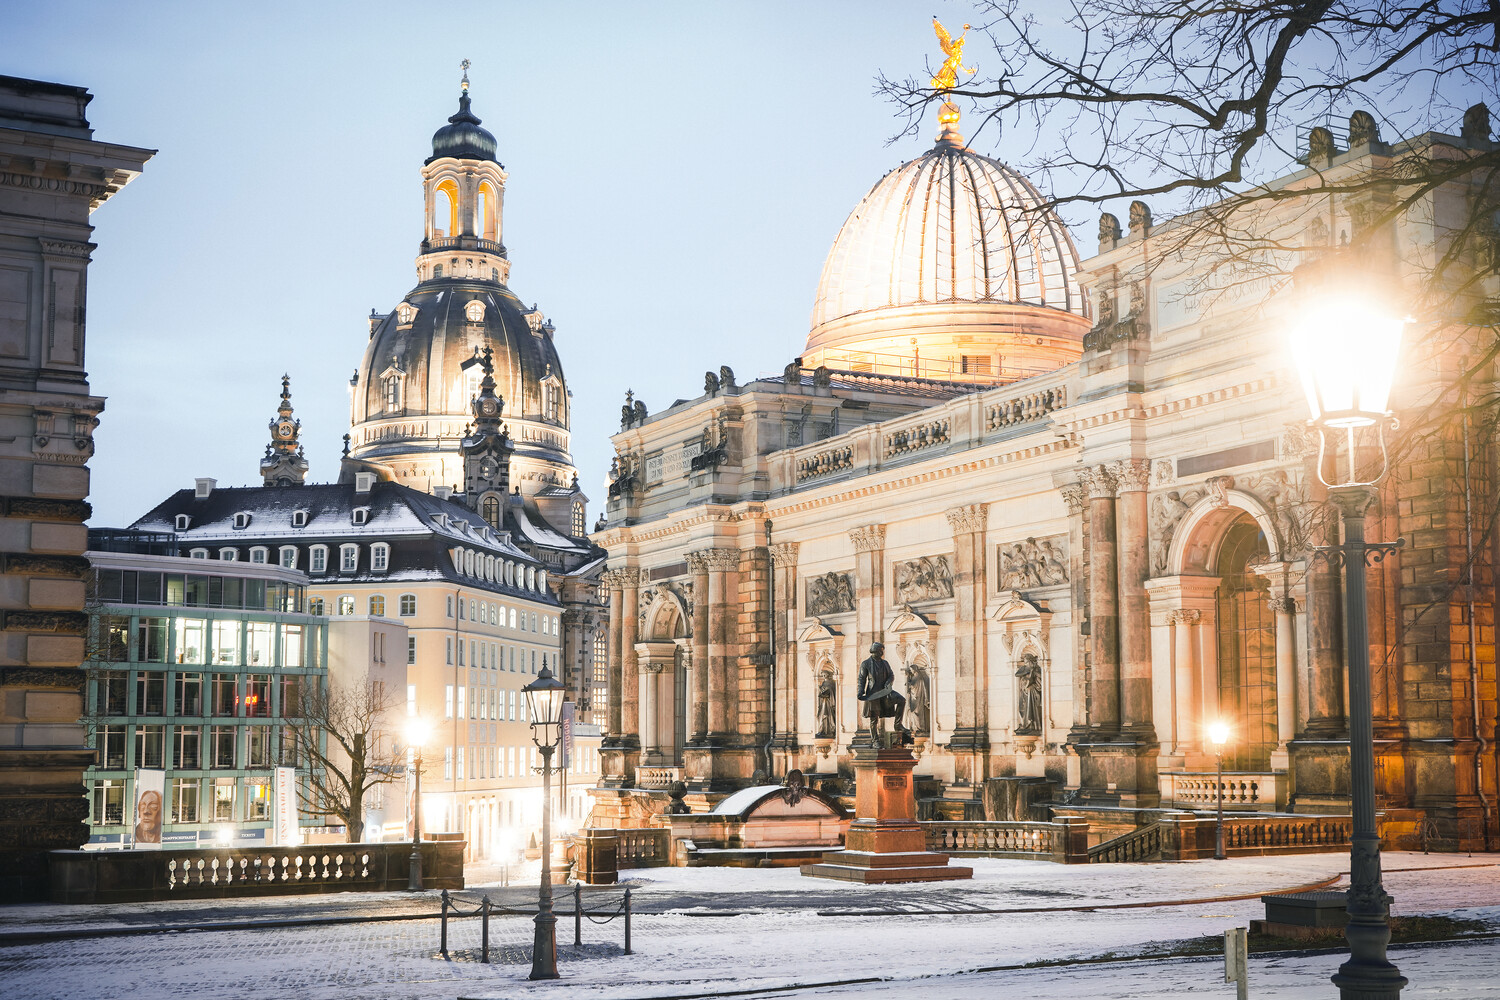 Dresden verwandelt sich auch im Winter zu einem beliebten Reiseziel. neben dem ältesten Weihnachtsmarkt - dem Striezelmarkt ist auch das ZDF Adventskonzert oder das Silvesterkonzert in der Semperoper zu erwähnen.